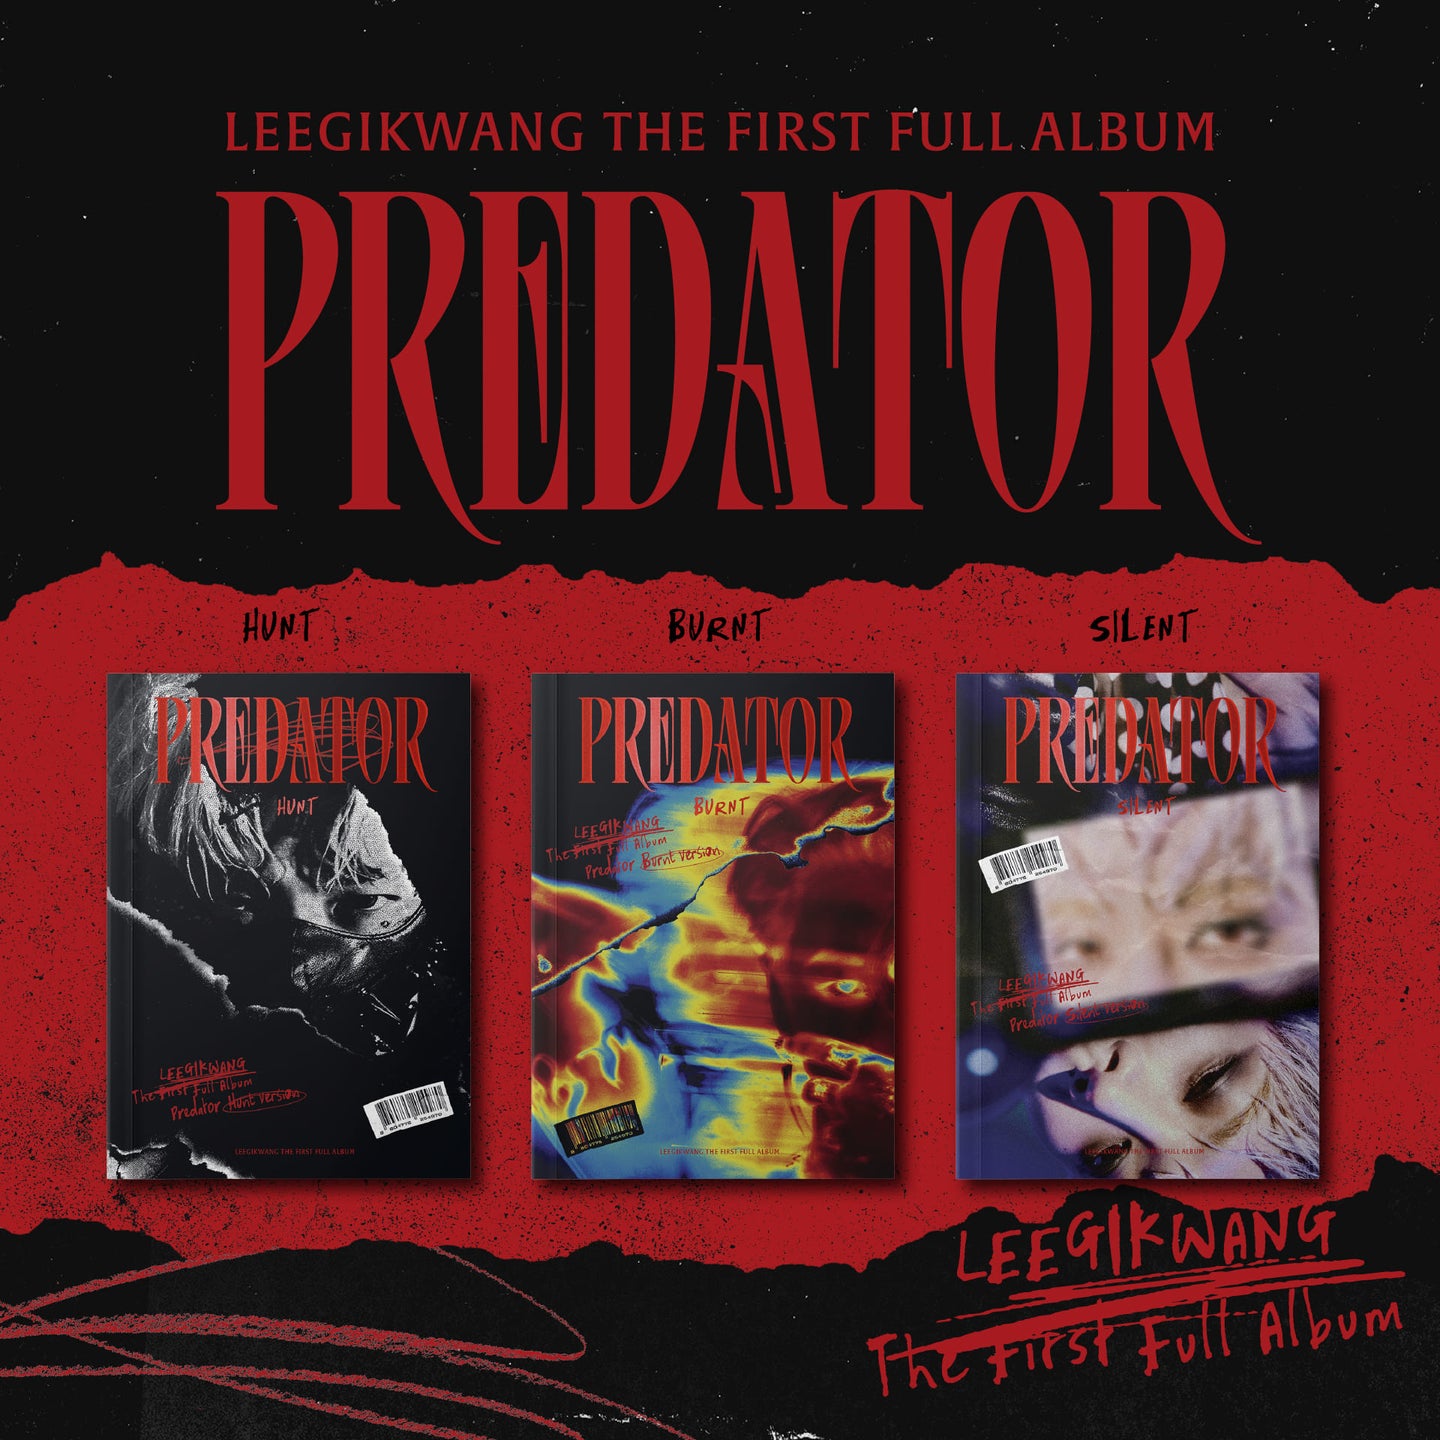 LEE GIKWANG Album Vol. 1 - Predator (Random)